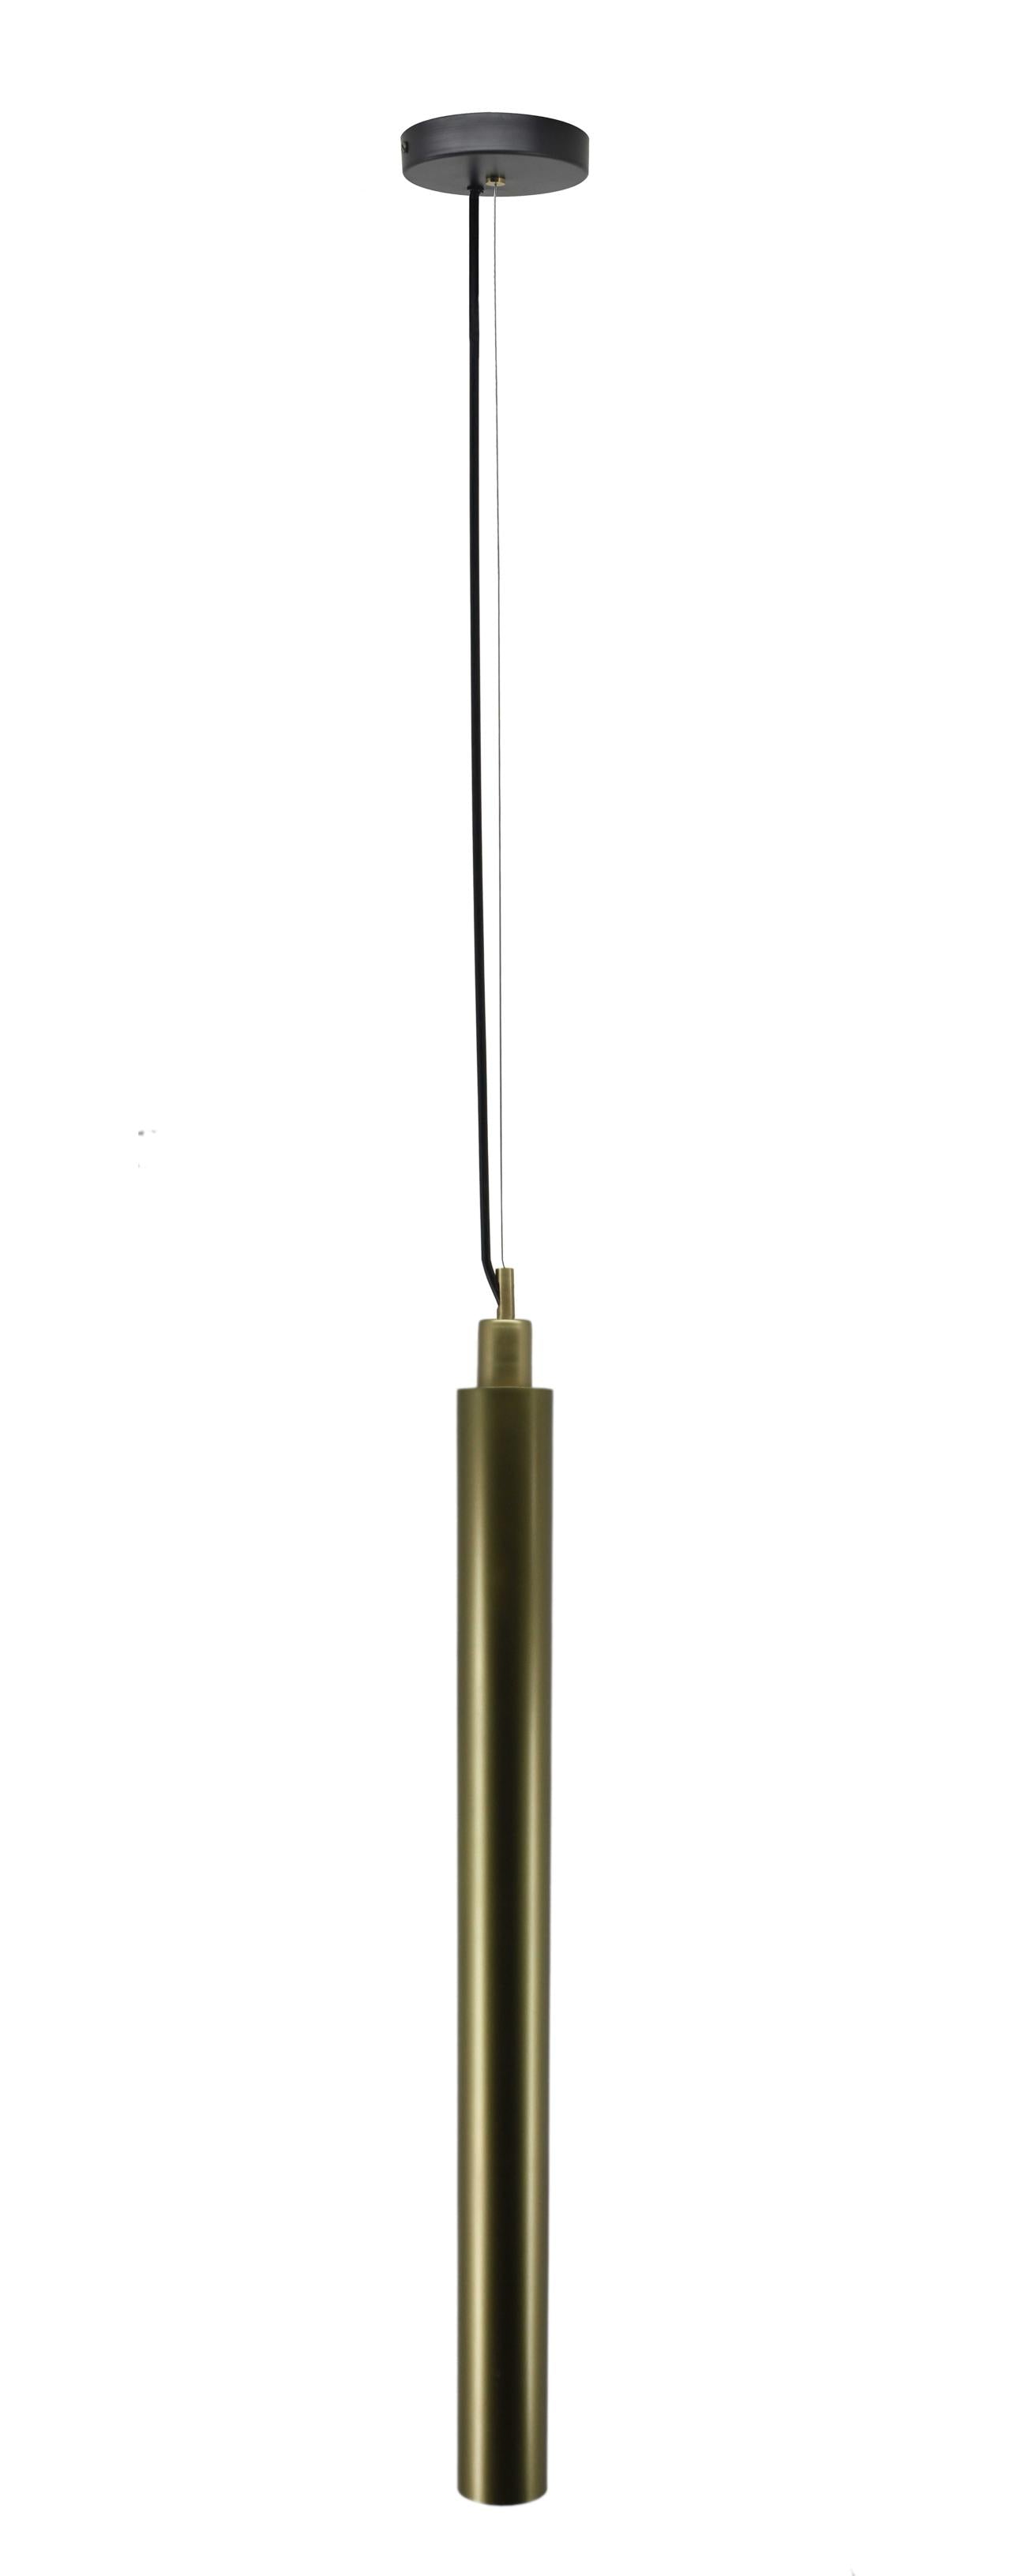 3" X 3" X 39" Brass Galvanized Iron Pendant Lamp